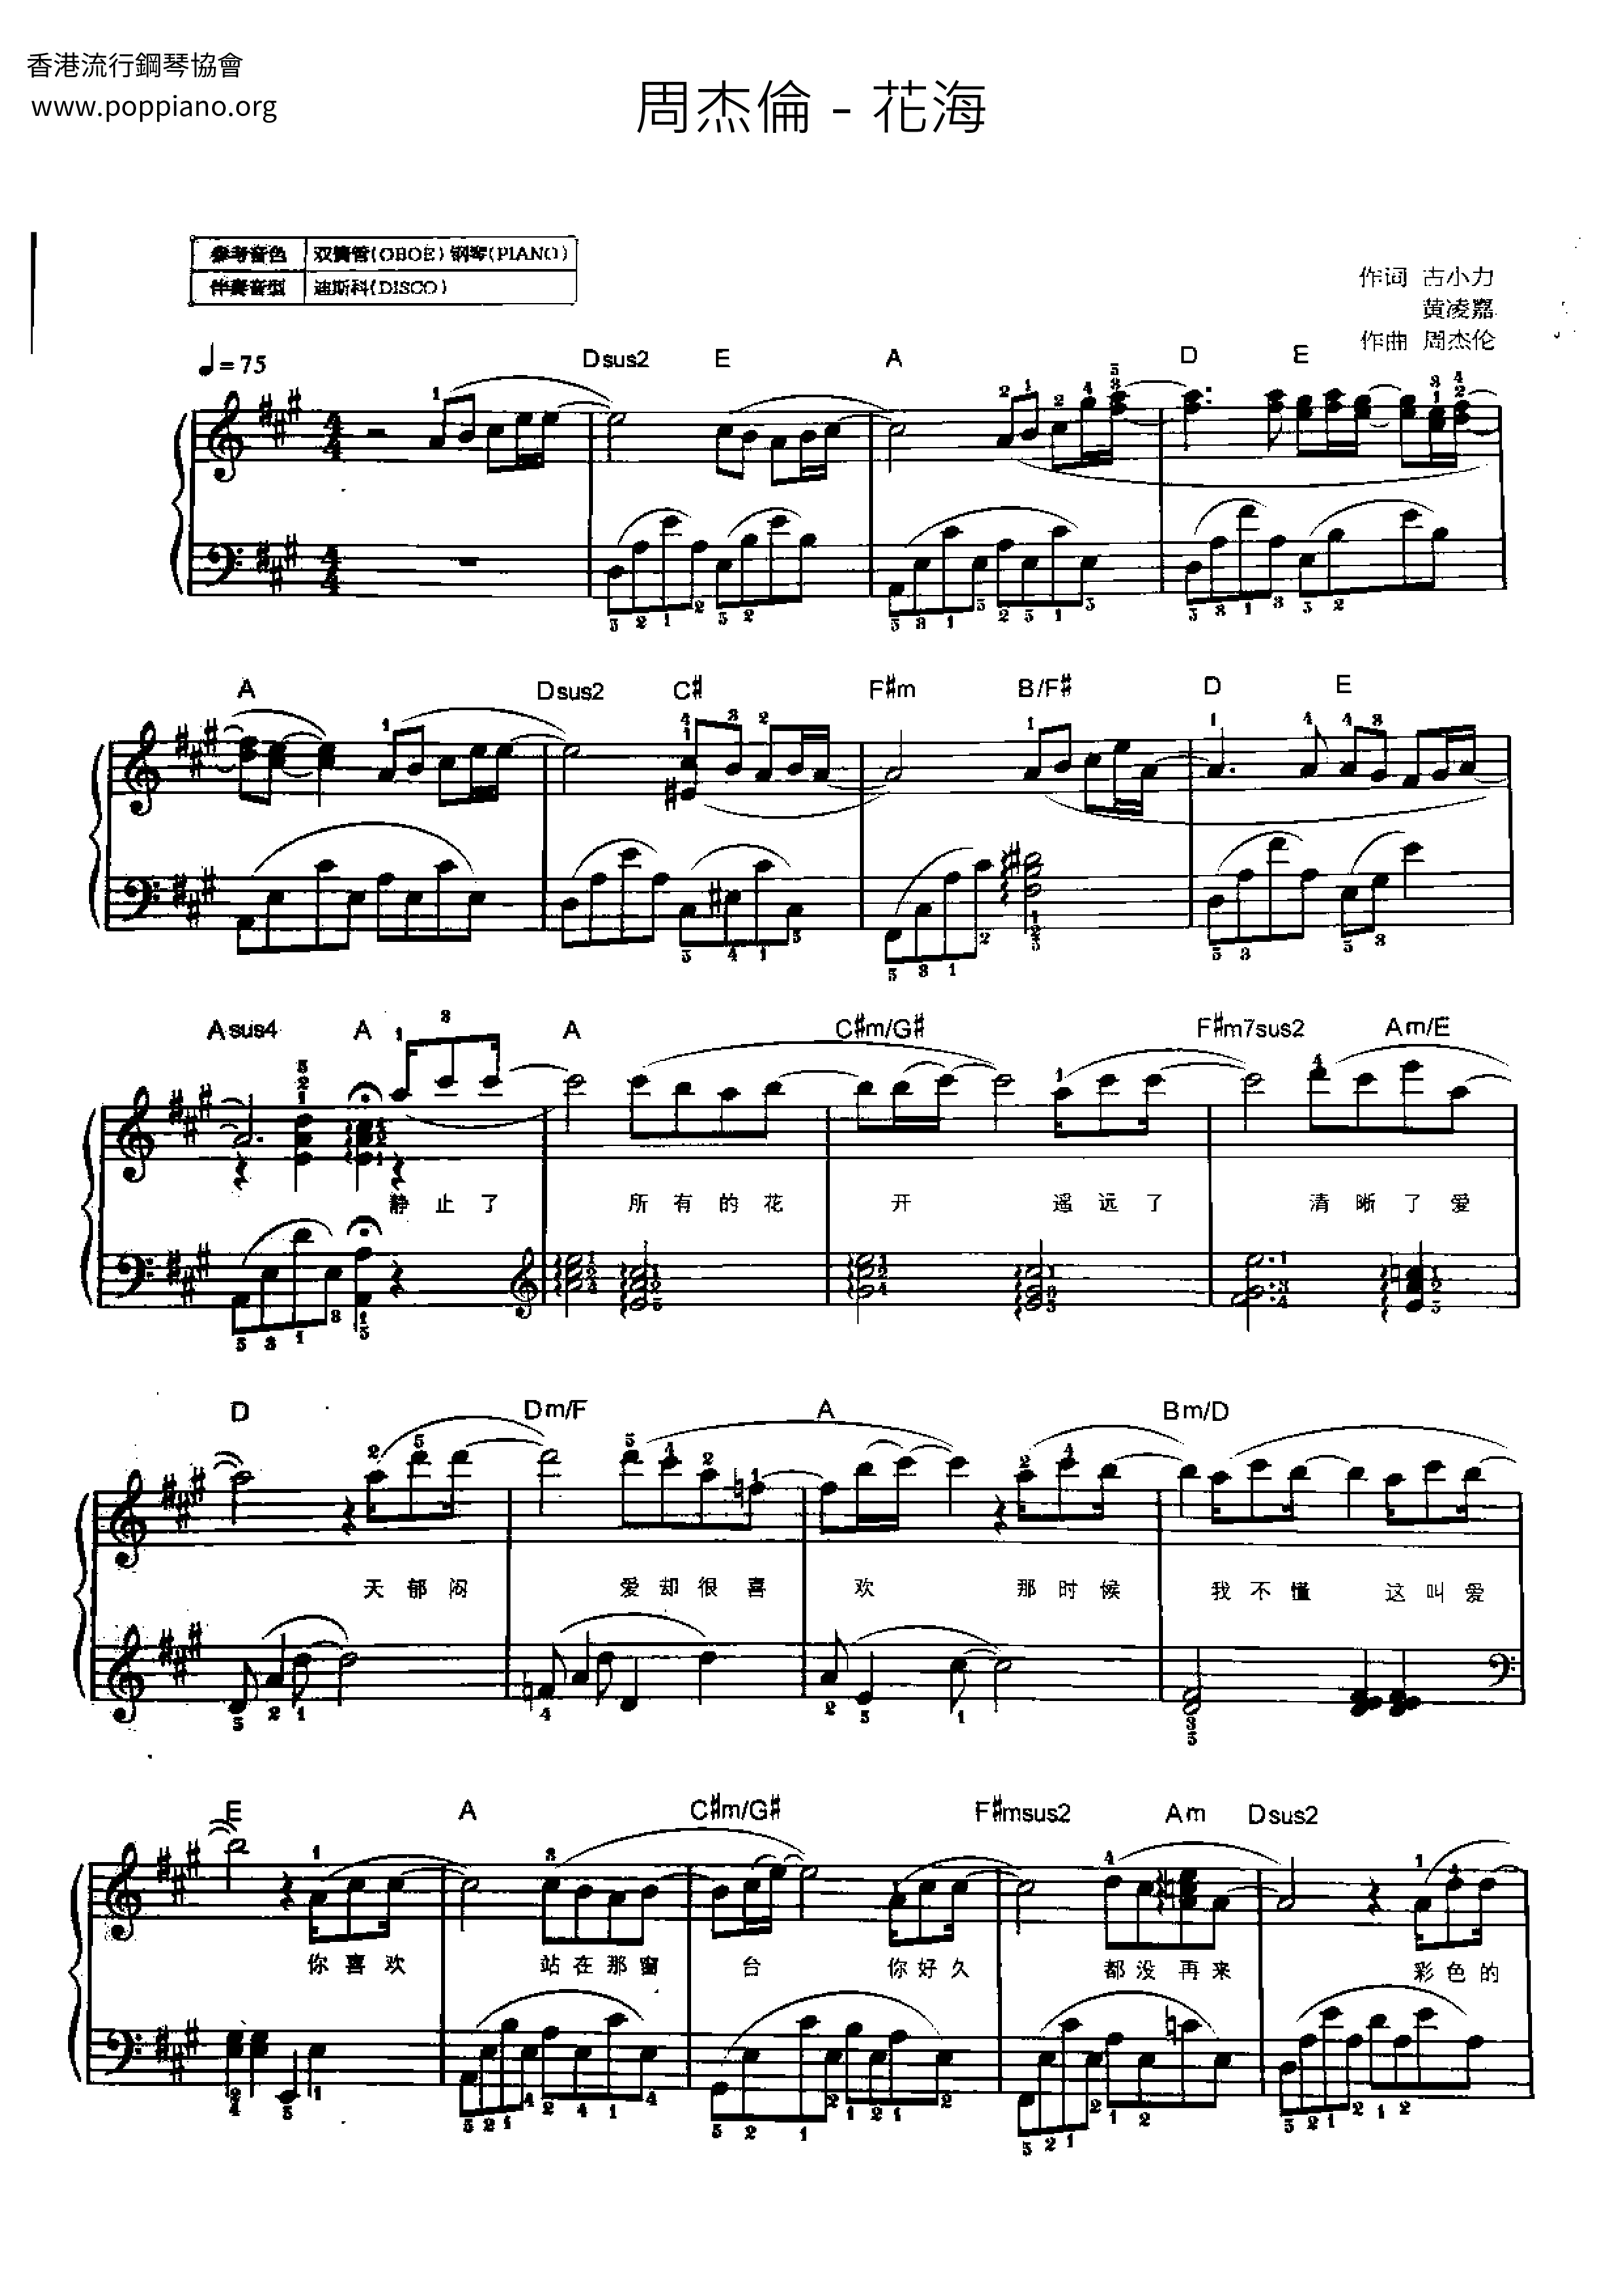 周杰伦-花海 琴谱/五线谱pdf-香港流行钢琴协会